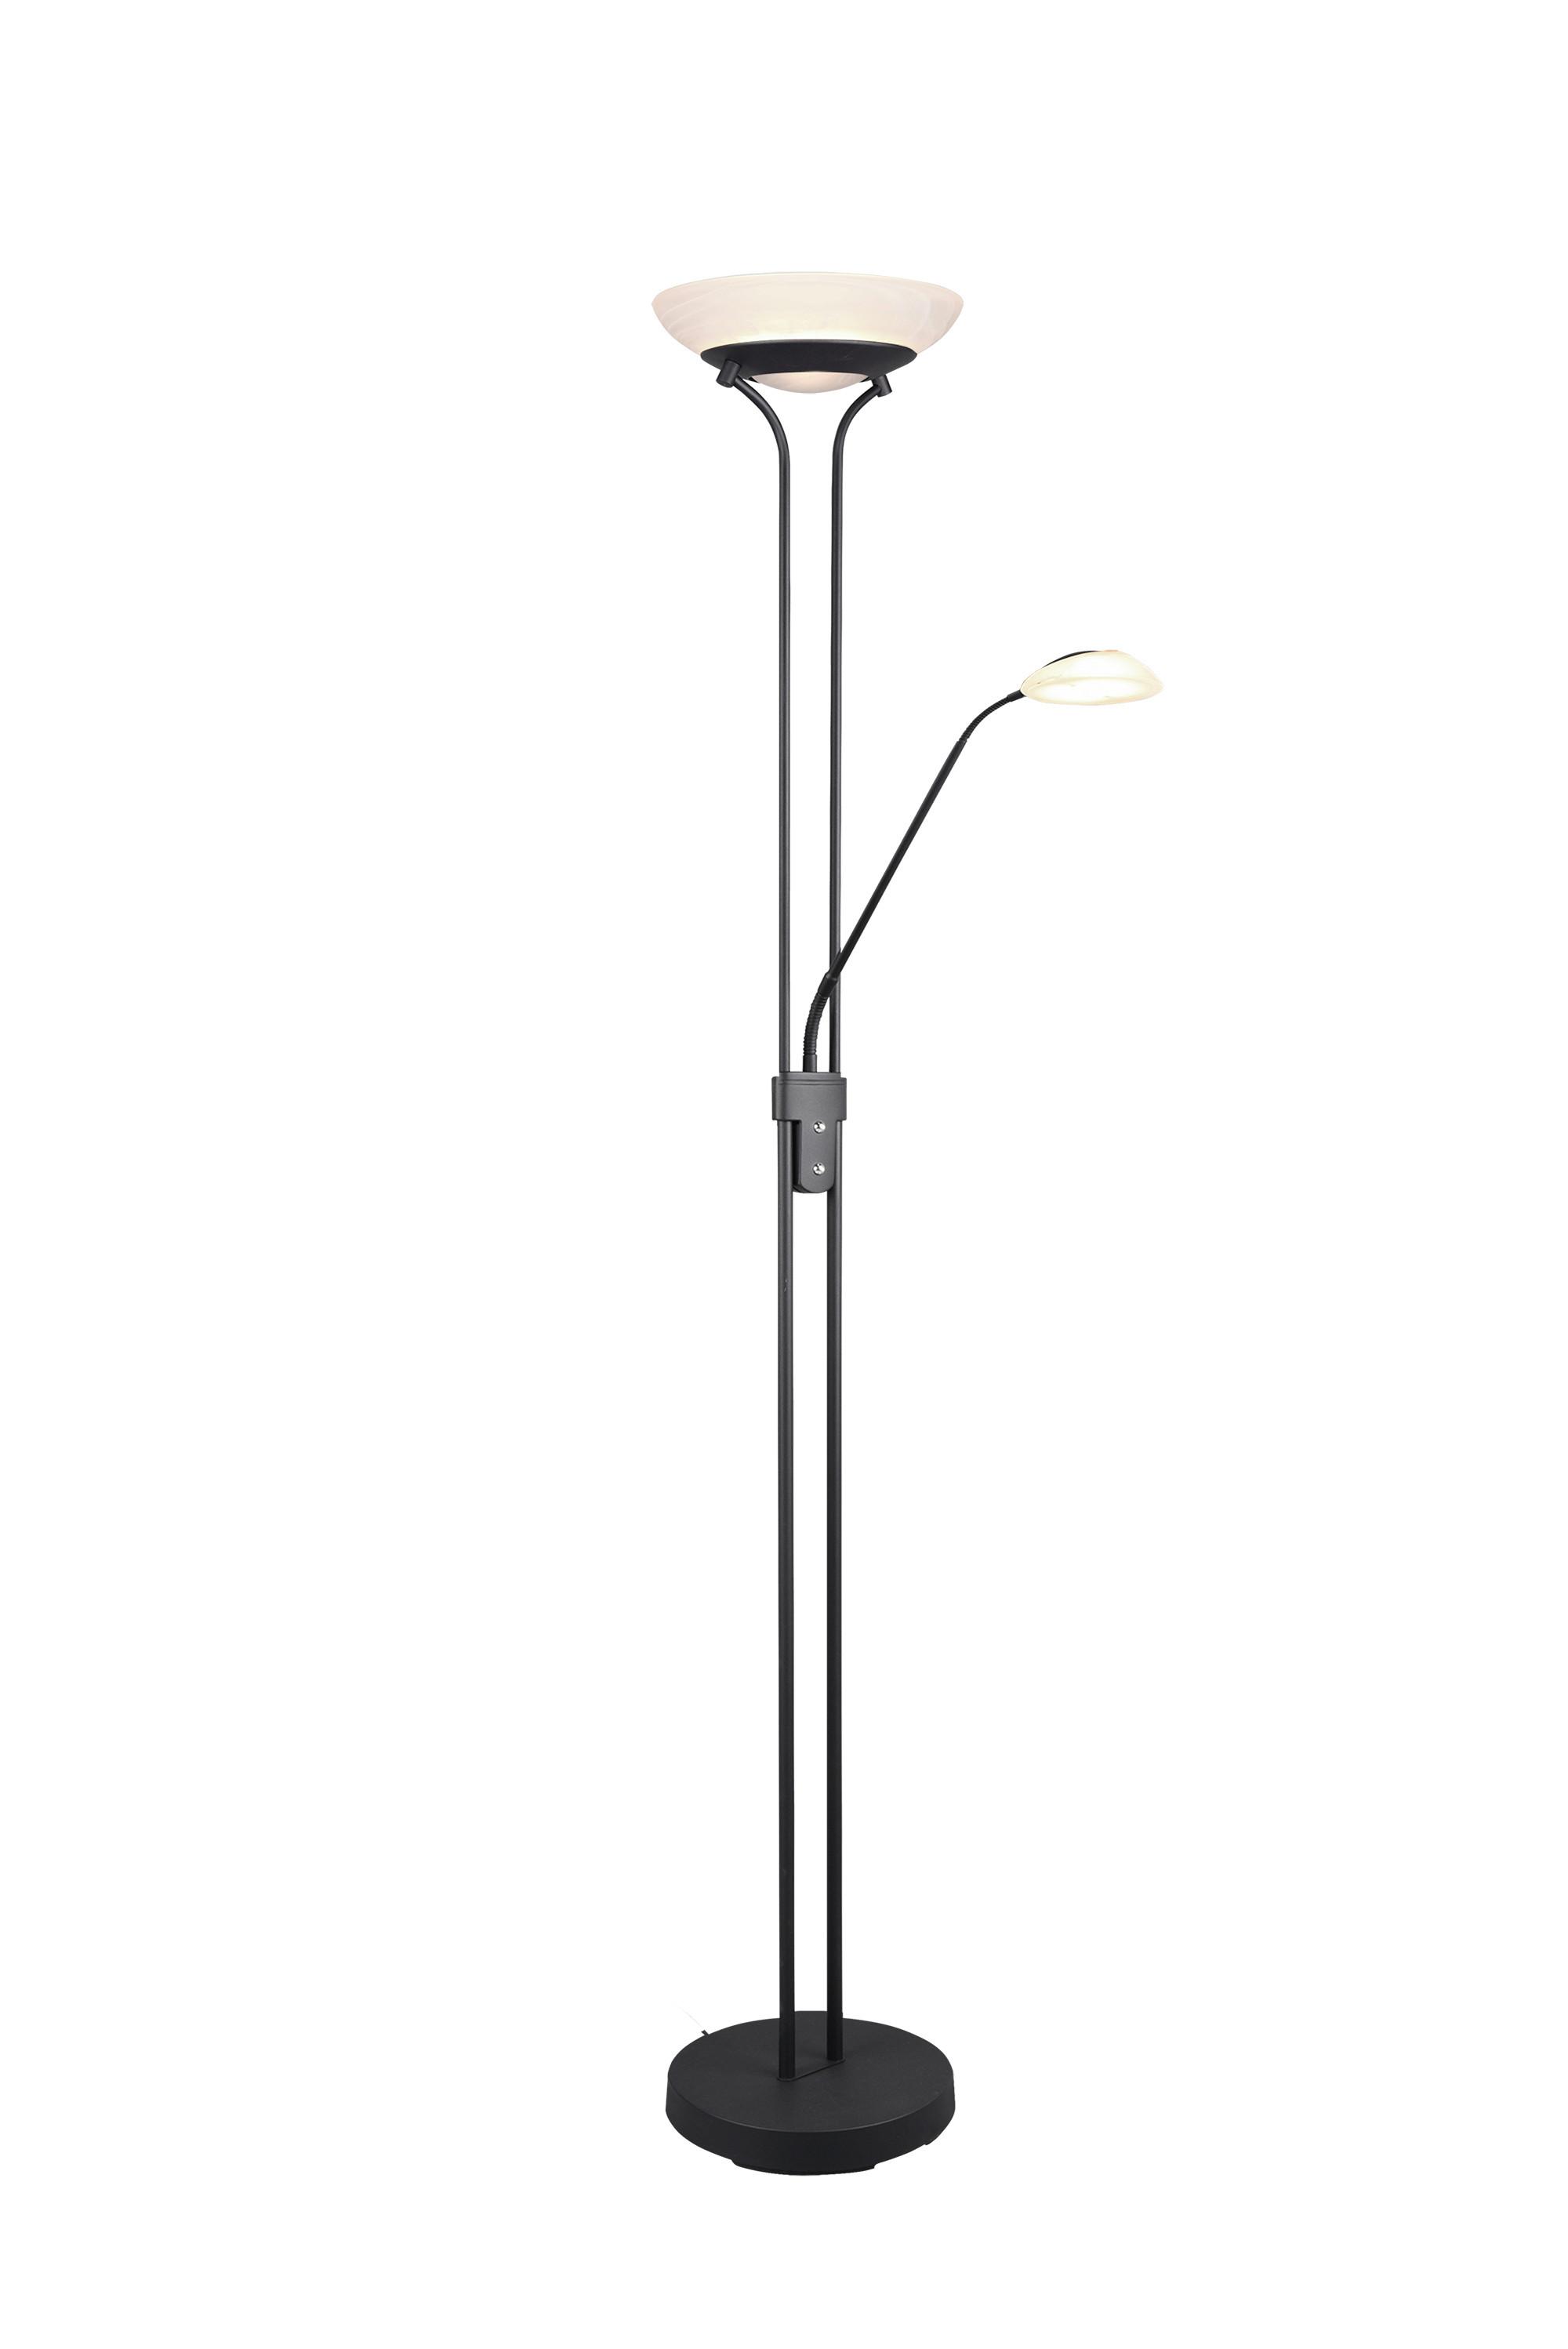 LED-Stehlampe dimmbar Schwarz/Weiß, Flexarm